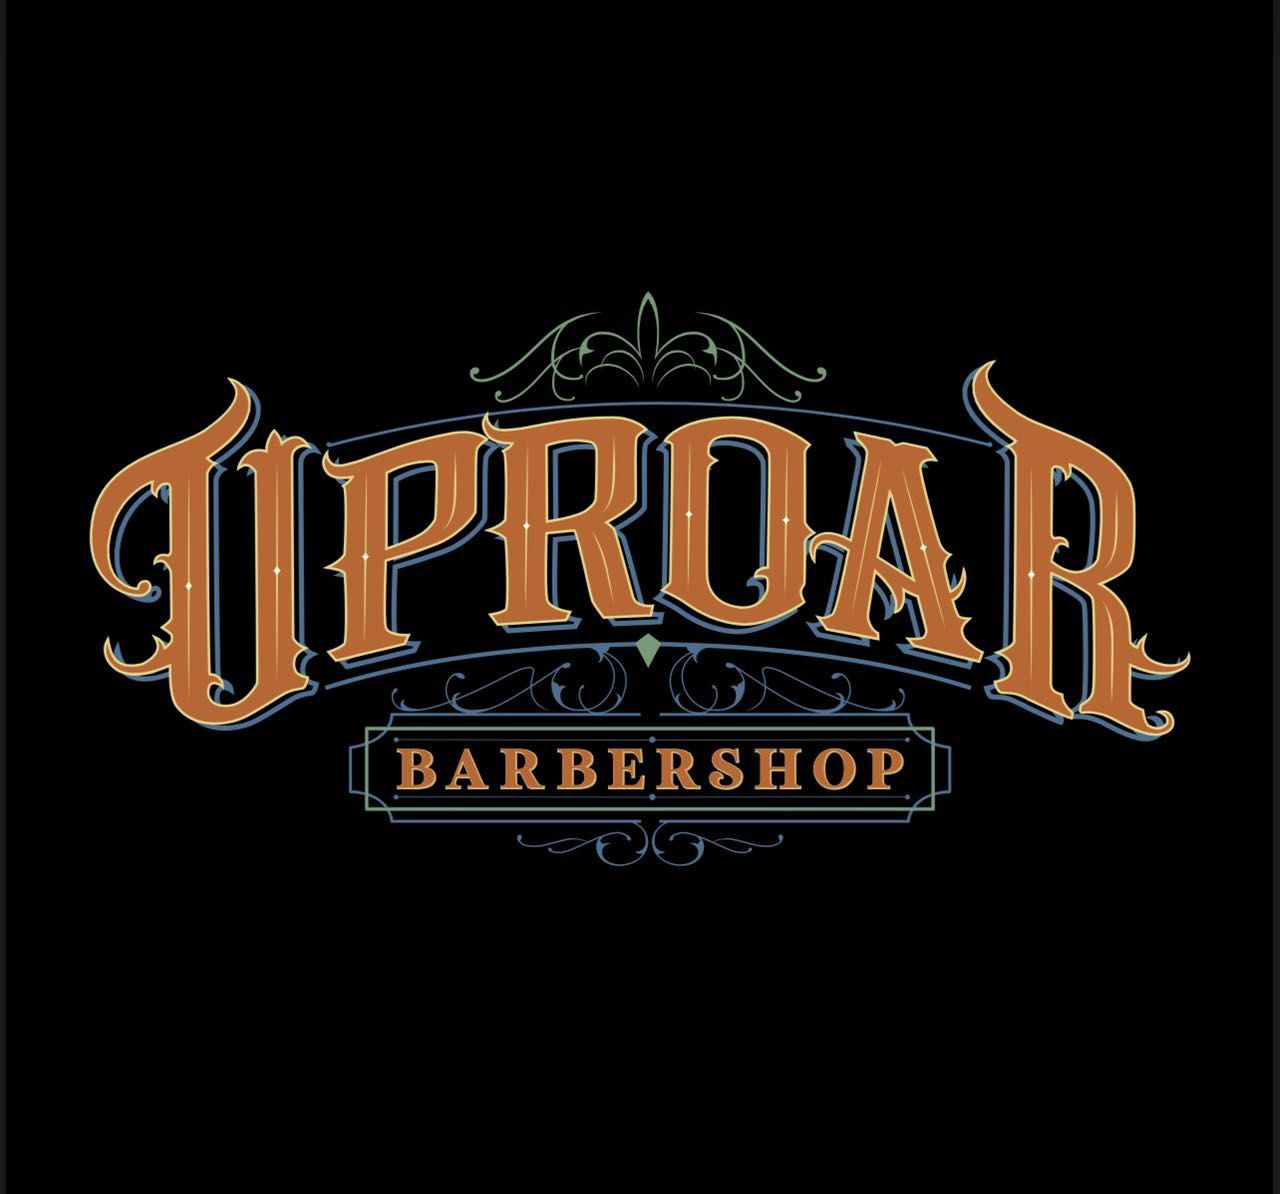 Uproar Barbershop, 9501 W Peoria ave suite 104, Peoria, 85345